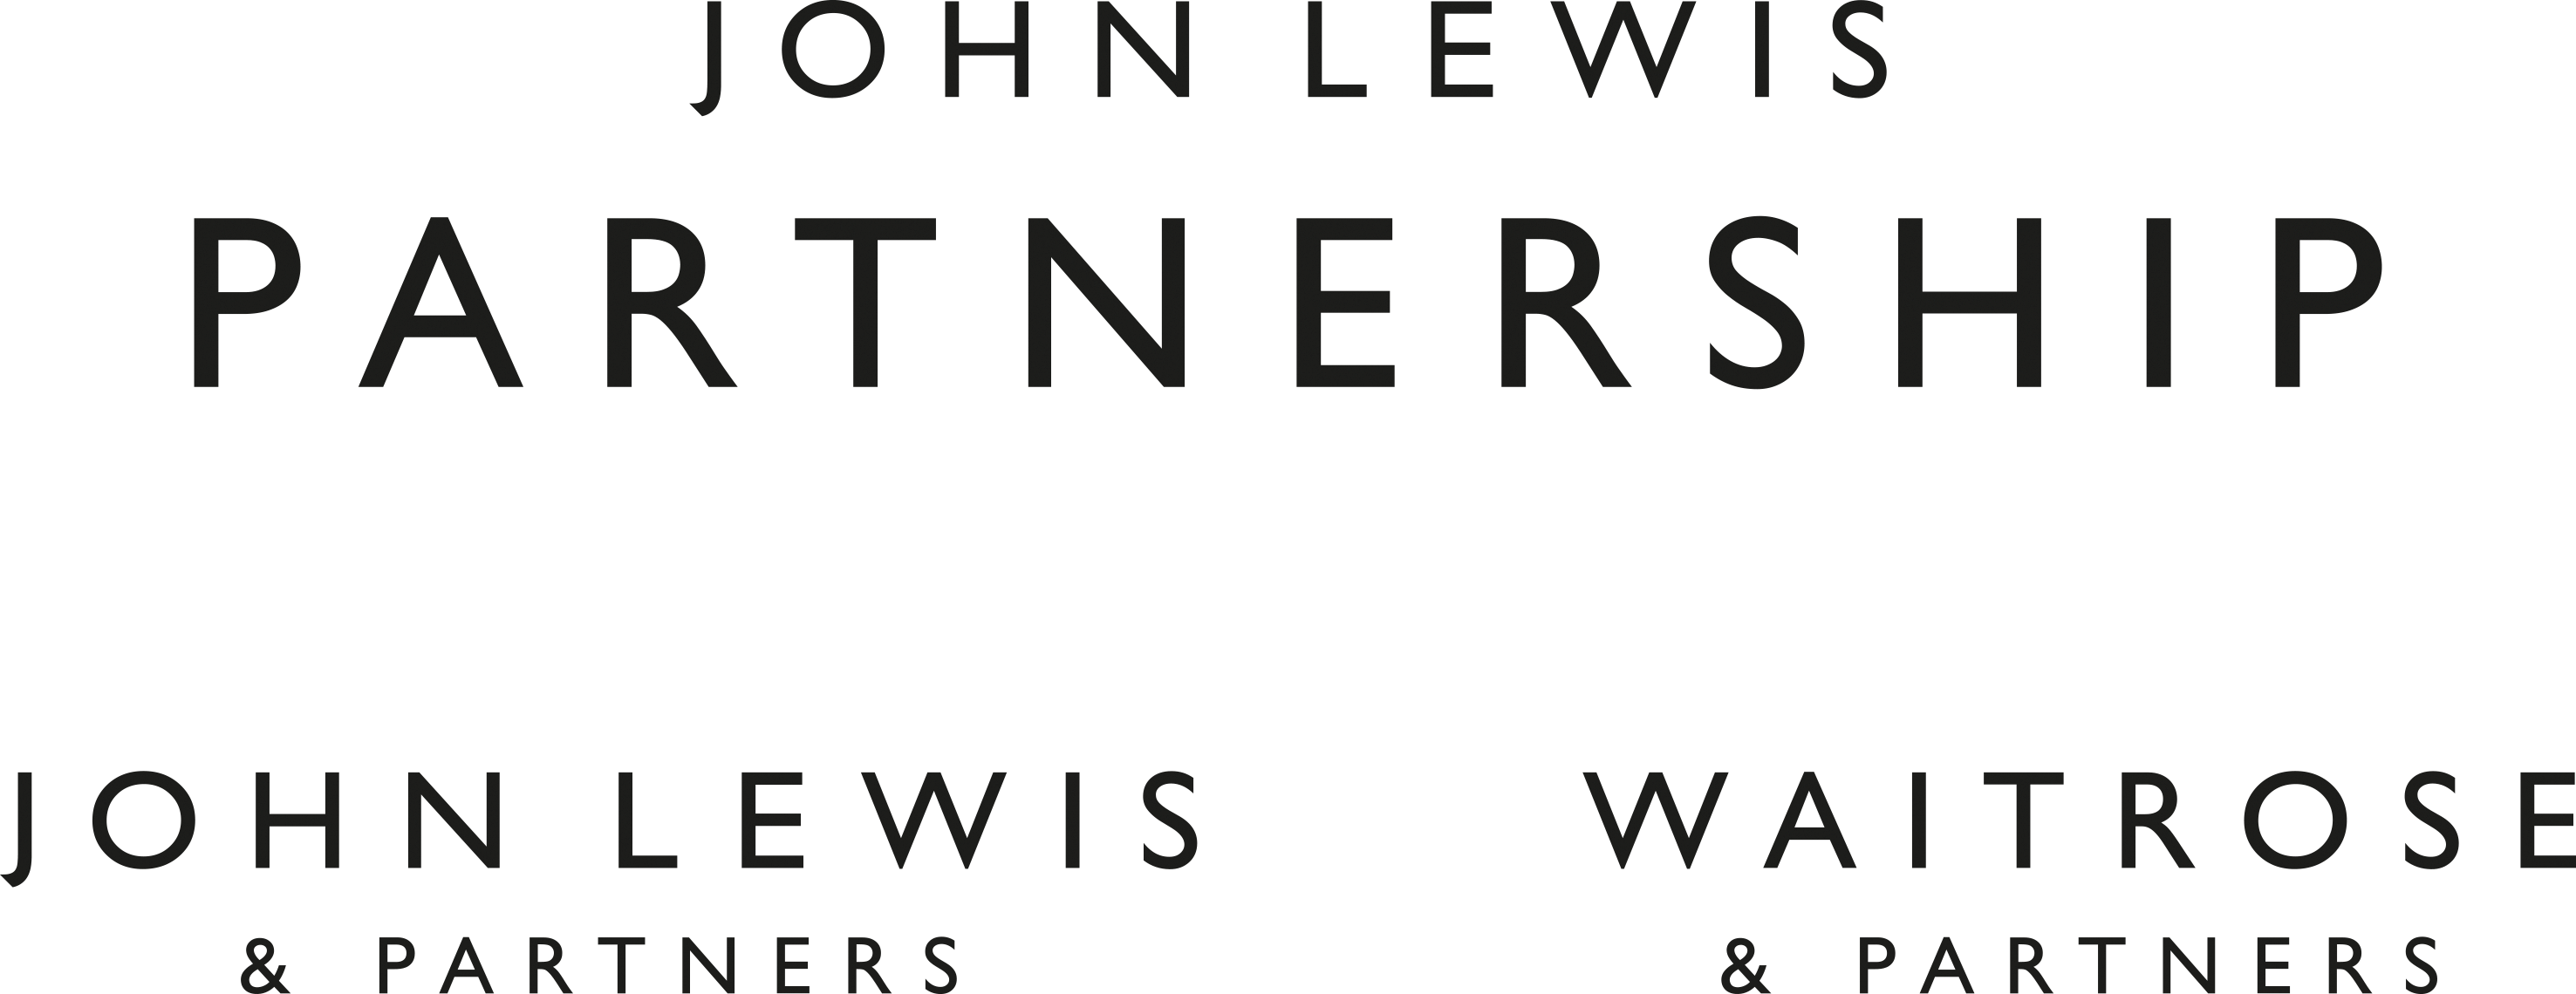 John Lewis partnership logo